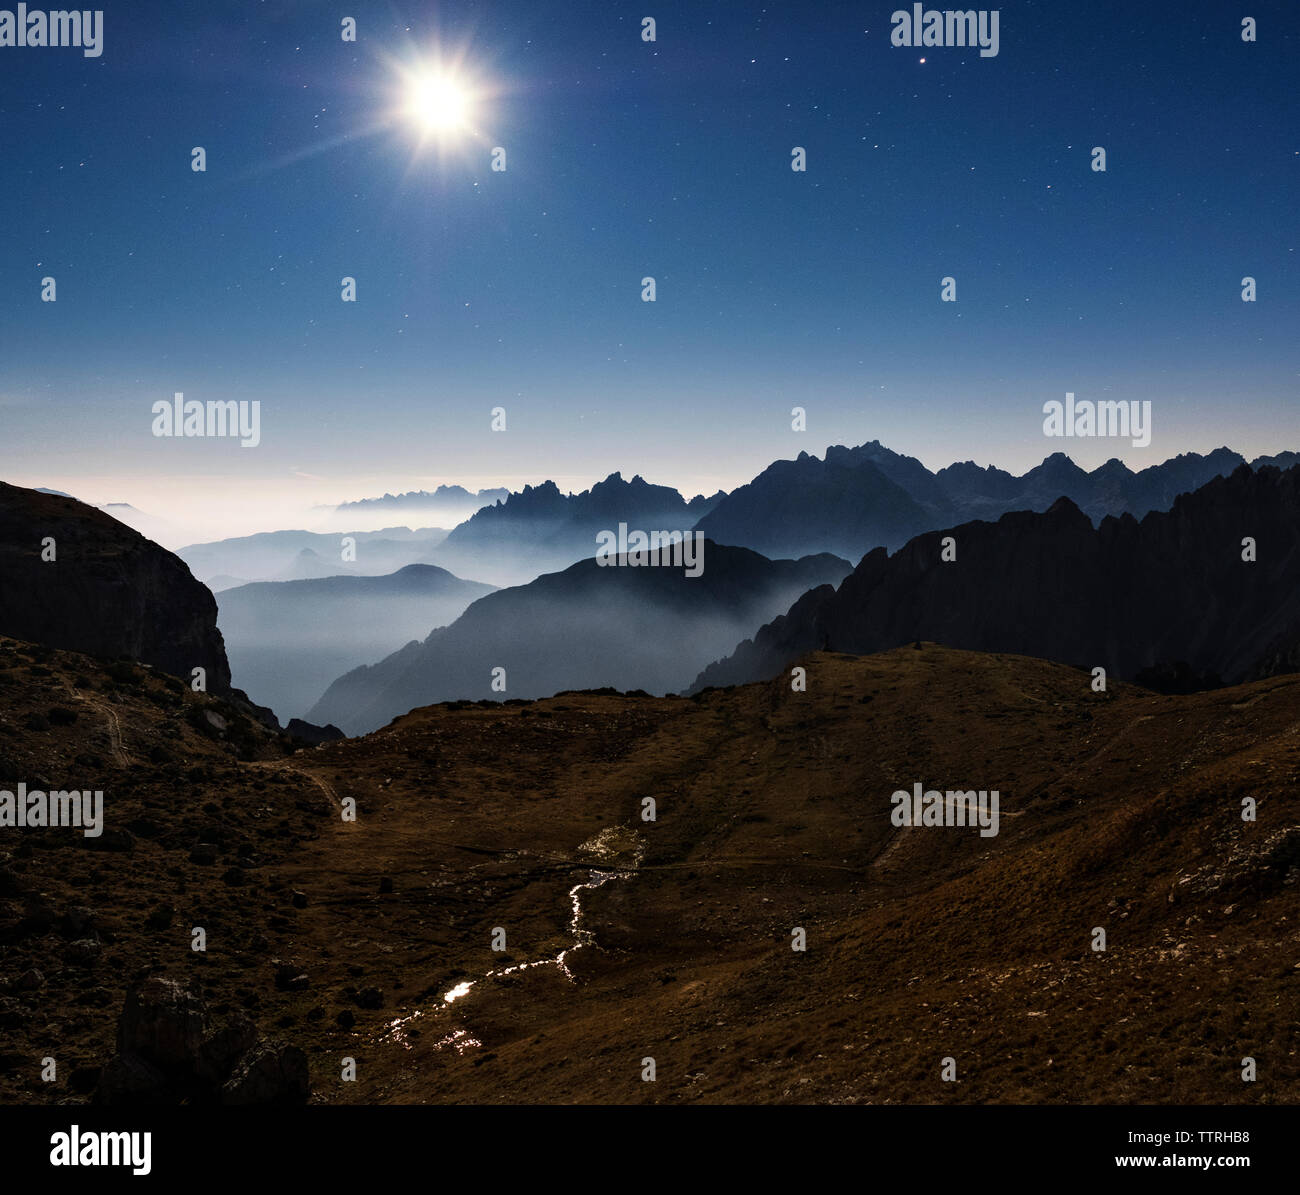 Vue panoramique des montagnes de silhouette contre le ciel bleu de nuit Banque D'Images